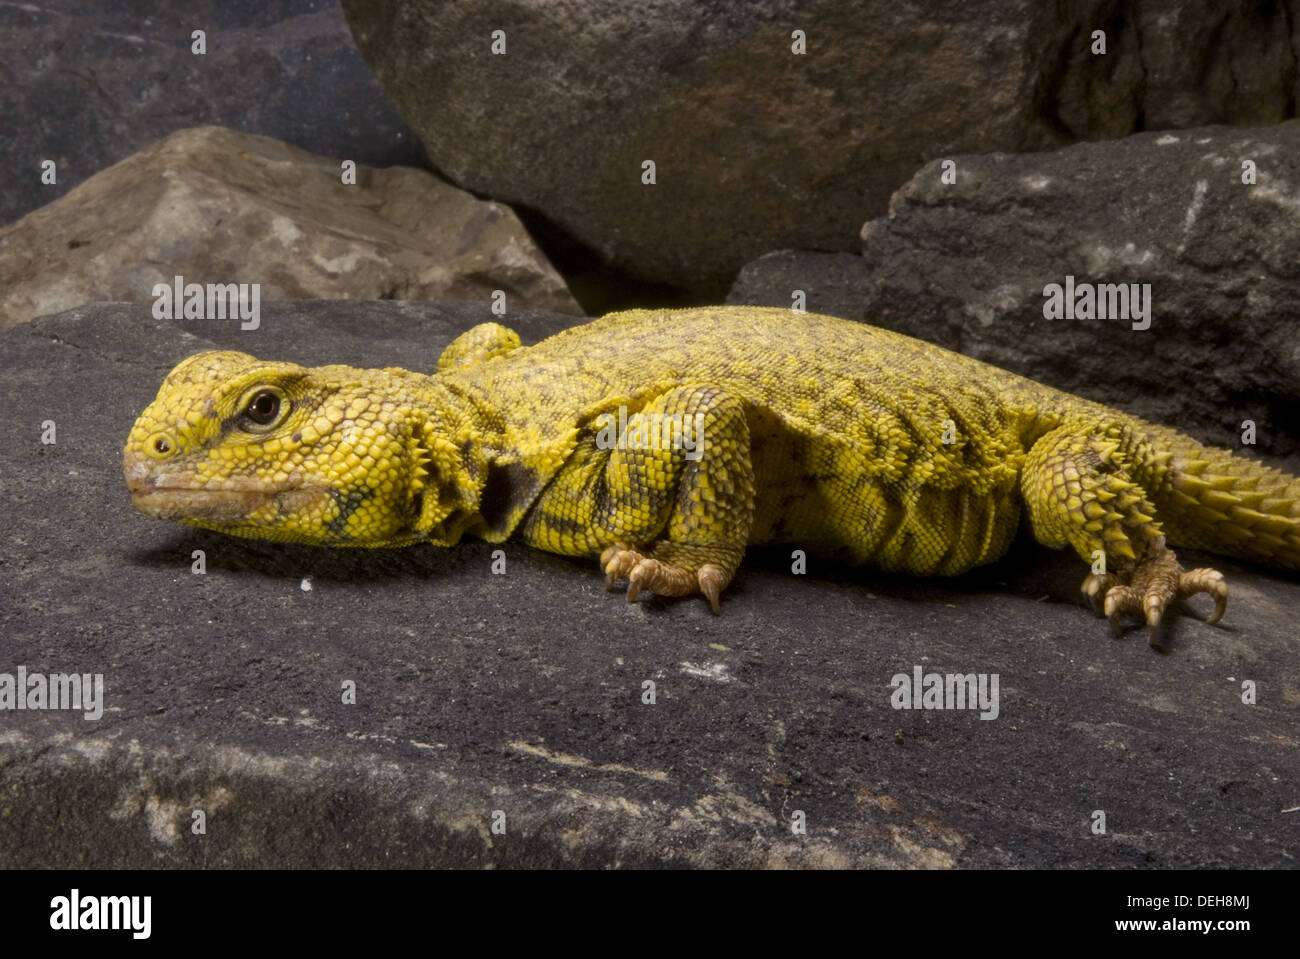 saharan spiny-tailes lizard, uromastyx geyri Stock Photo